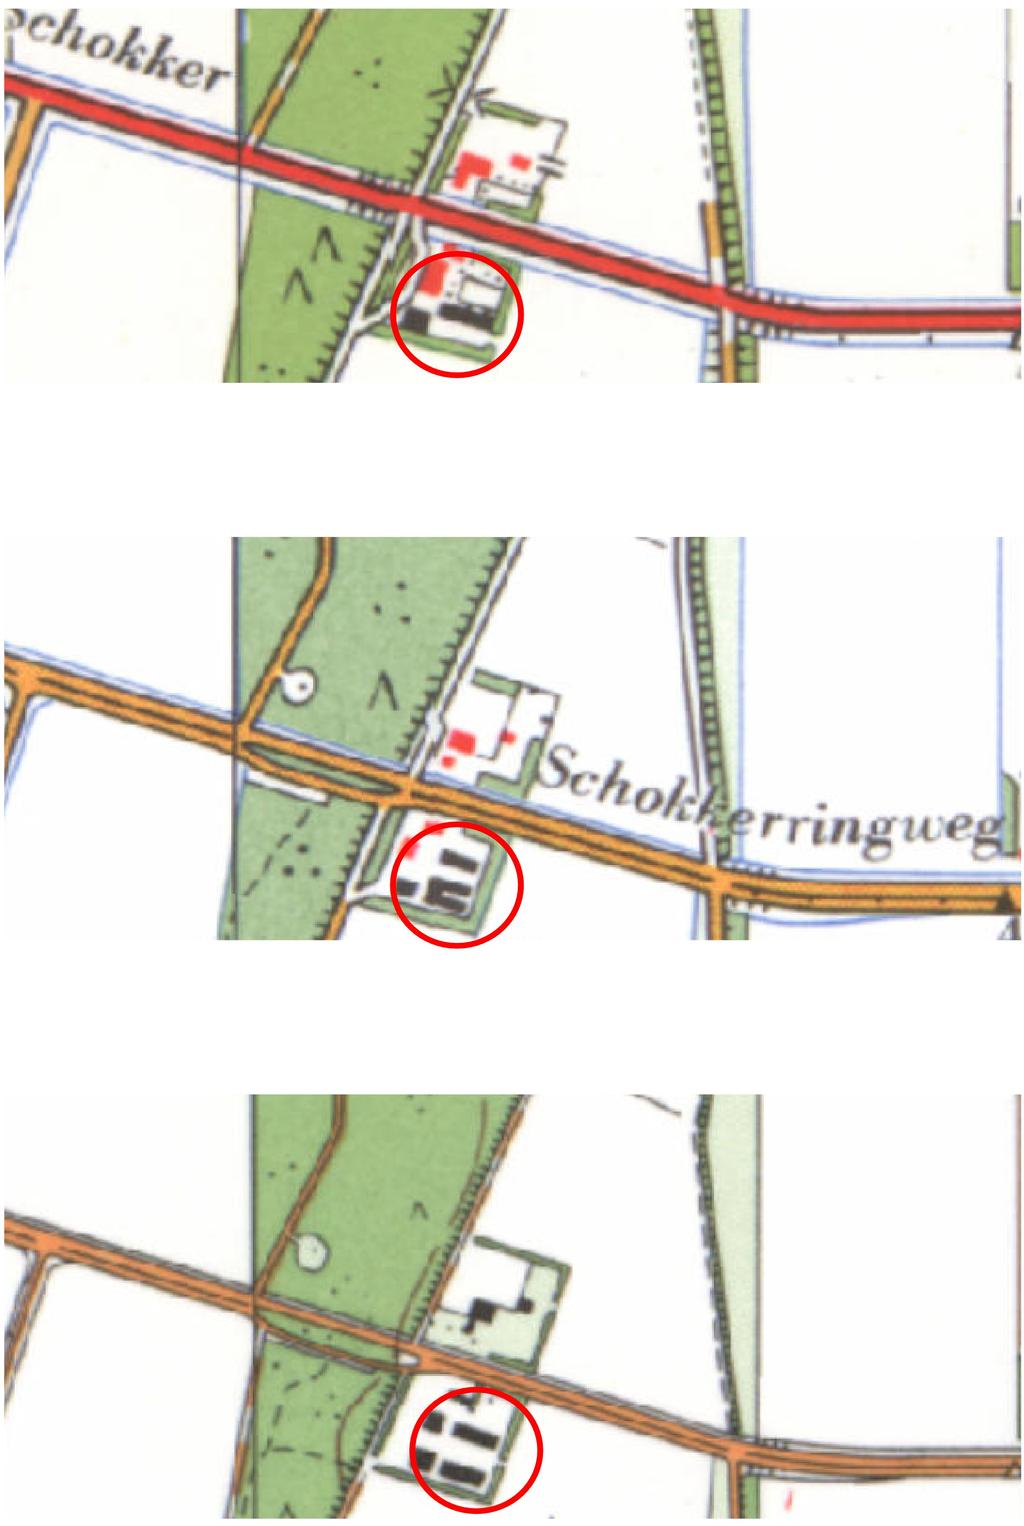 Figuur 5: Schokland, Schokkerringweg 12: Uitsneden uit de topografische kaarten uit